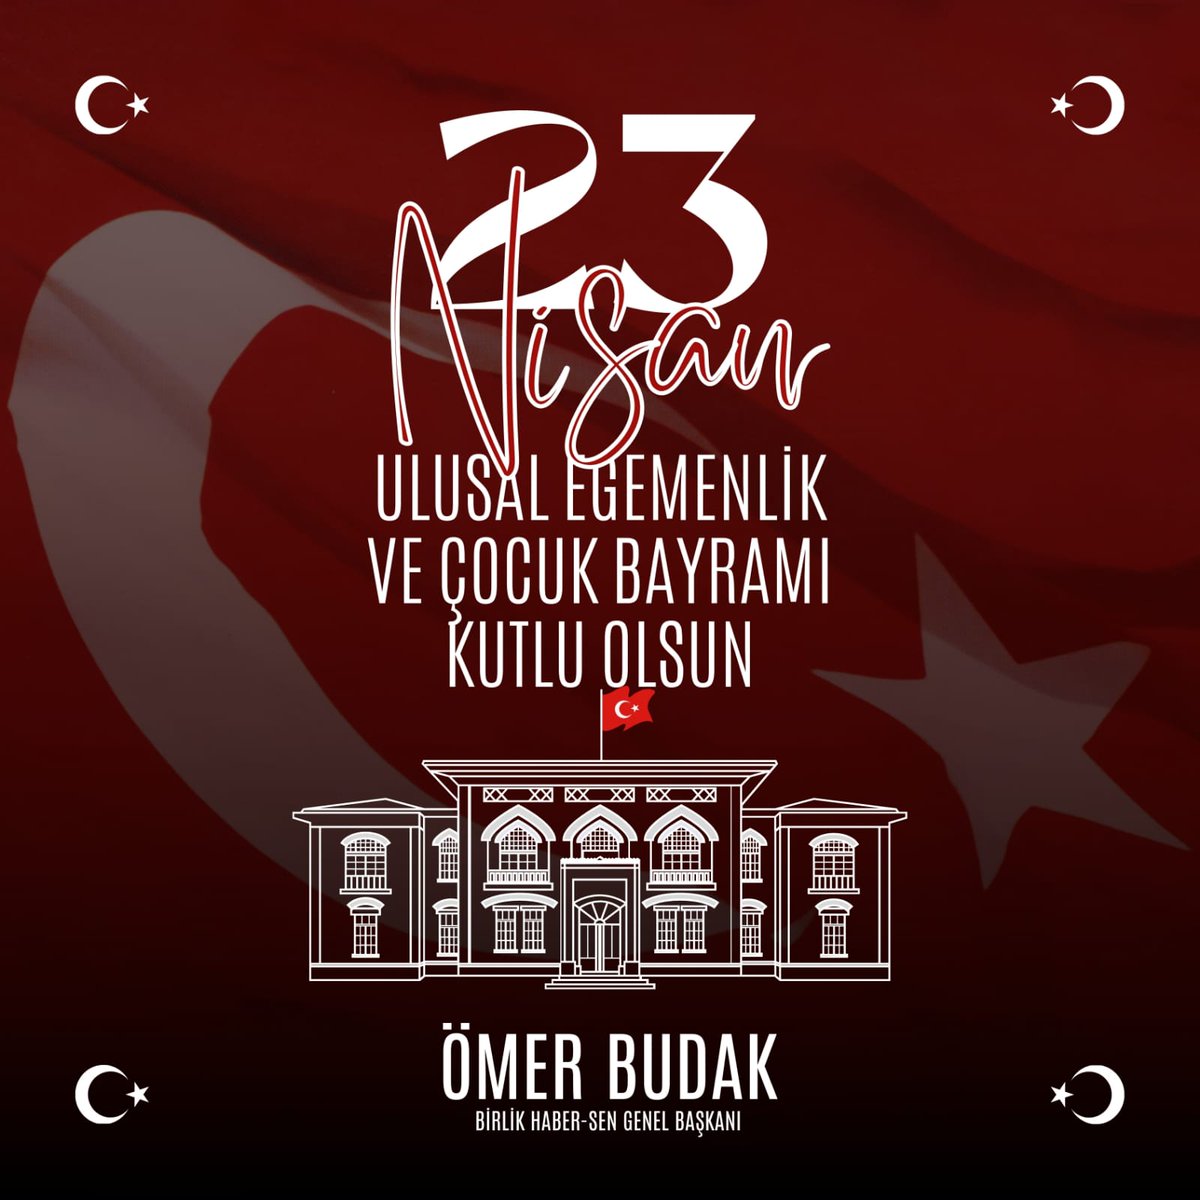 Türkiye Büyük Millet Meclisi'mizin 104. Kuruluş Yıl Dönümünü ve yarınımızın umudu olan çocuklarımız başta olmak üzere hepimizin #23nisan Egemenlik ve Çocuk Bayramını kutluyorum.

#23NisanKutluOlsun #birliktebaşaracağız